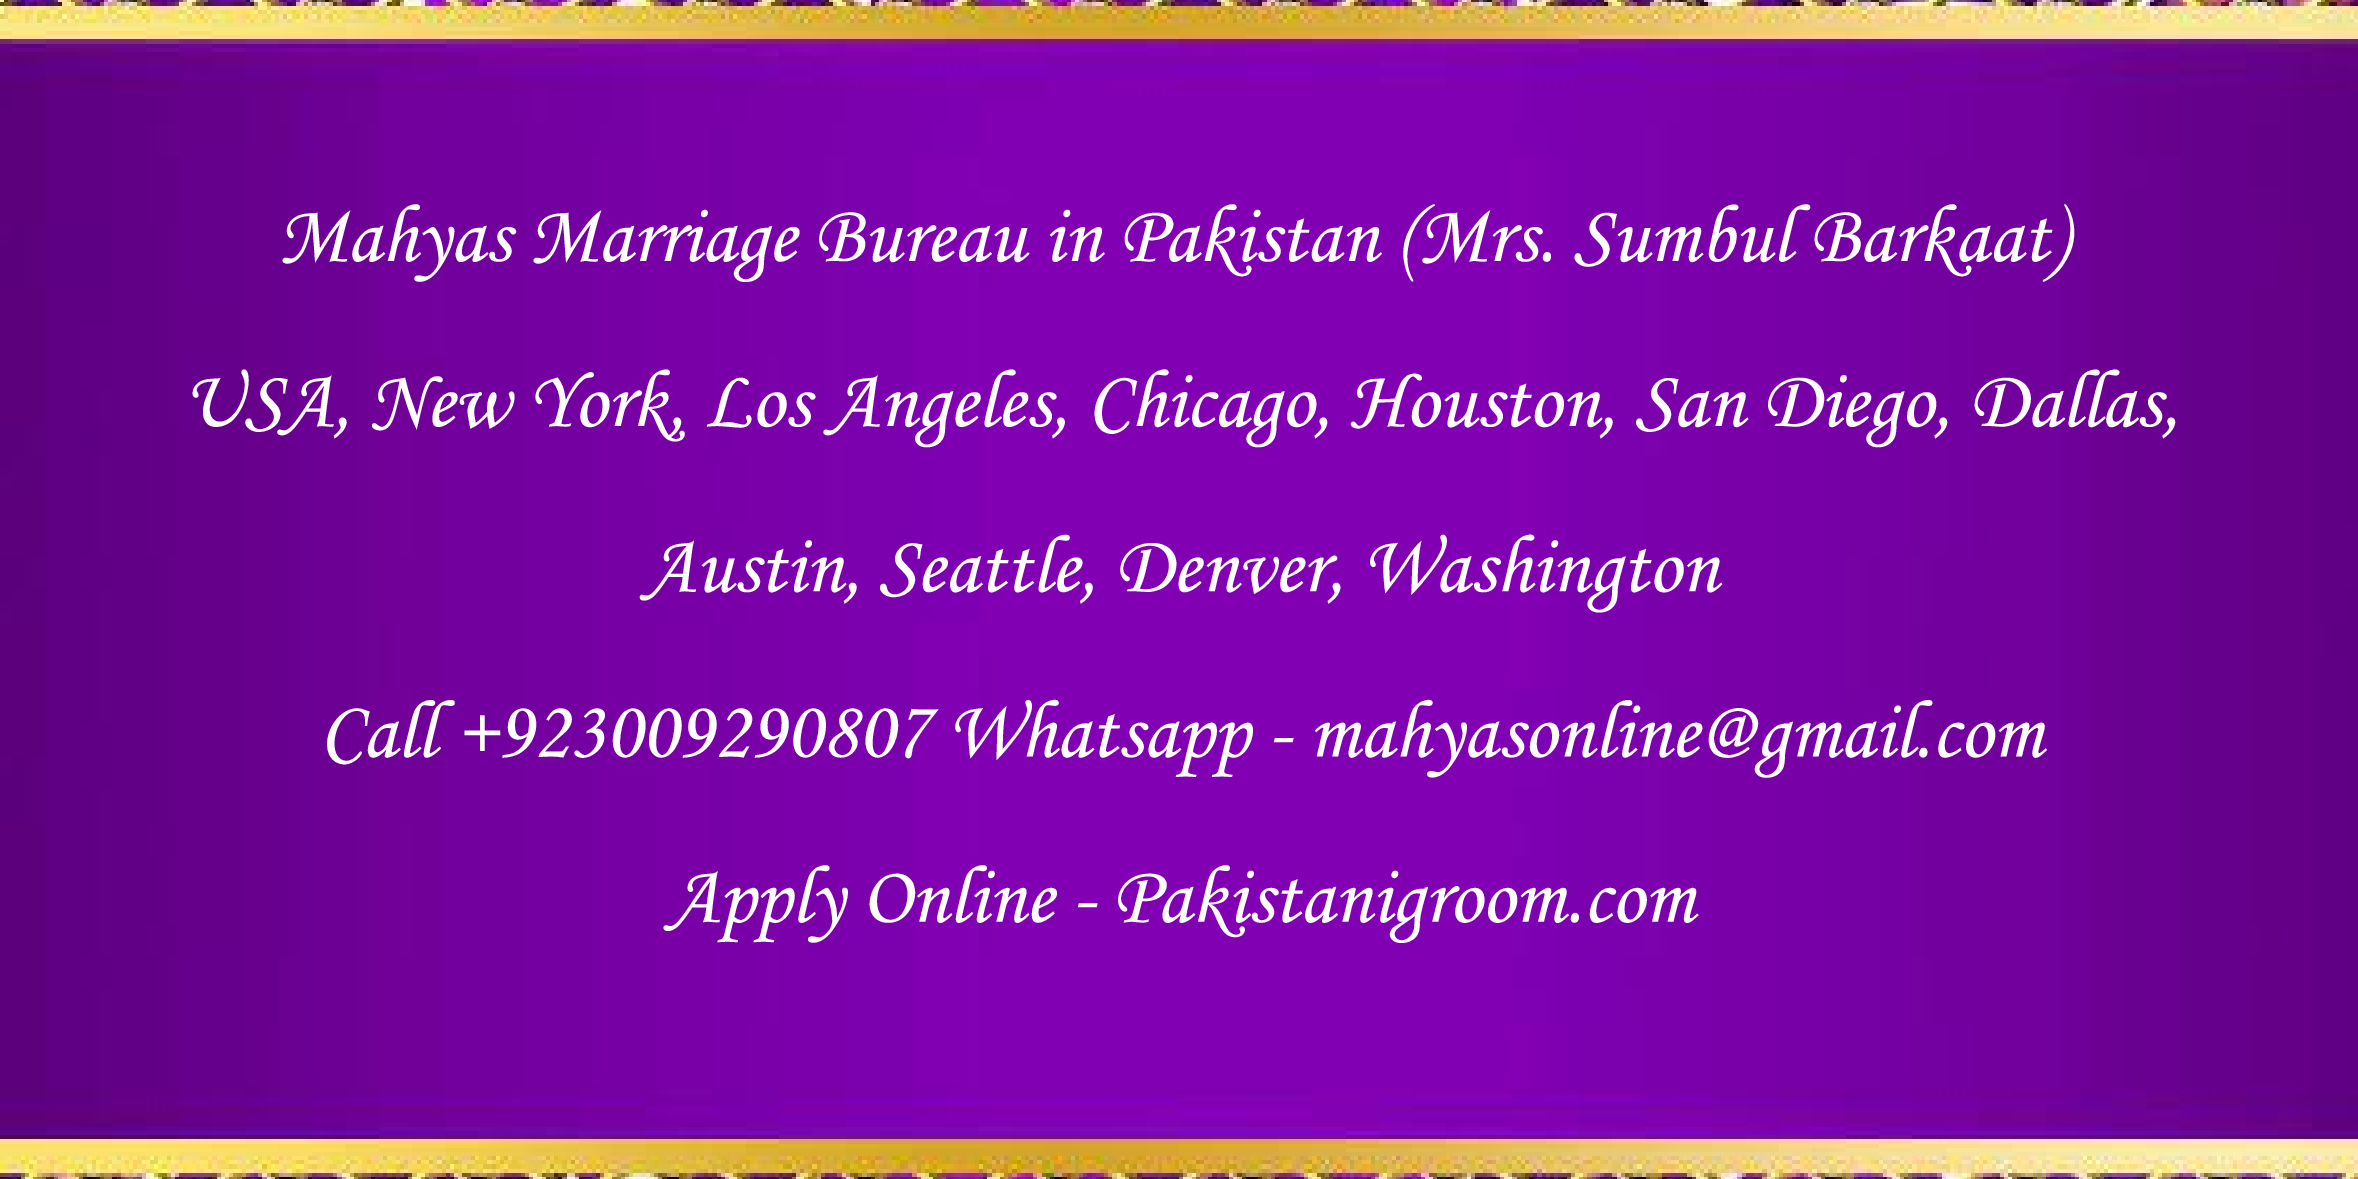 Mahyas-marriage-bureau-Karachi-Pakistan-for-Shia-Sunni-Remarriage-Divorce-Widow-Second-marriage-Punjabi-Pashto-Urdu-34.png